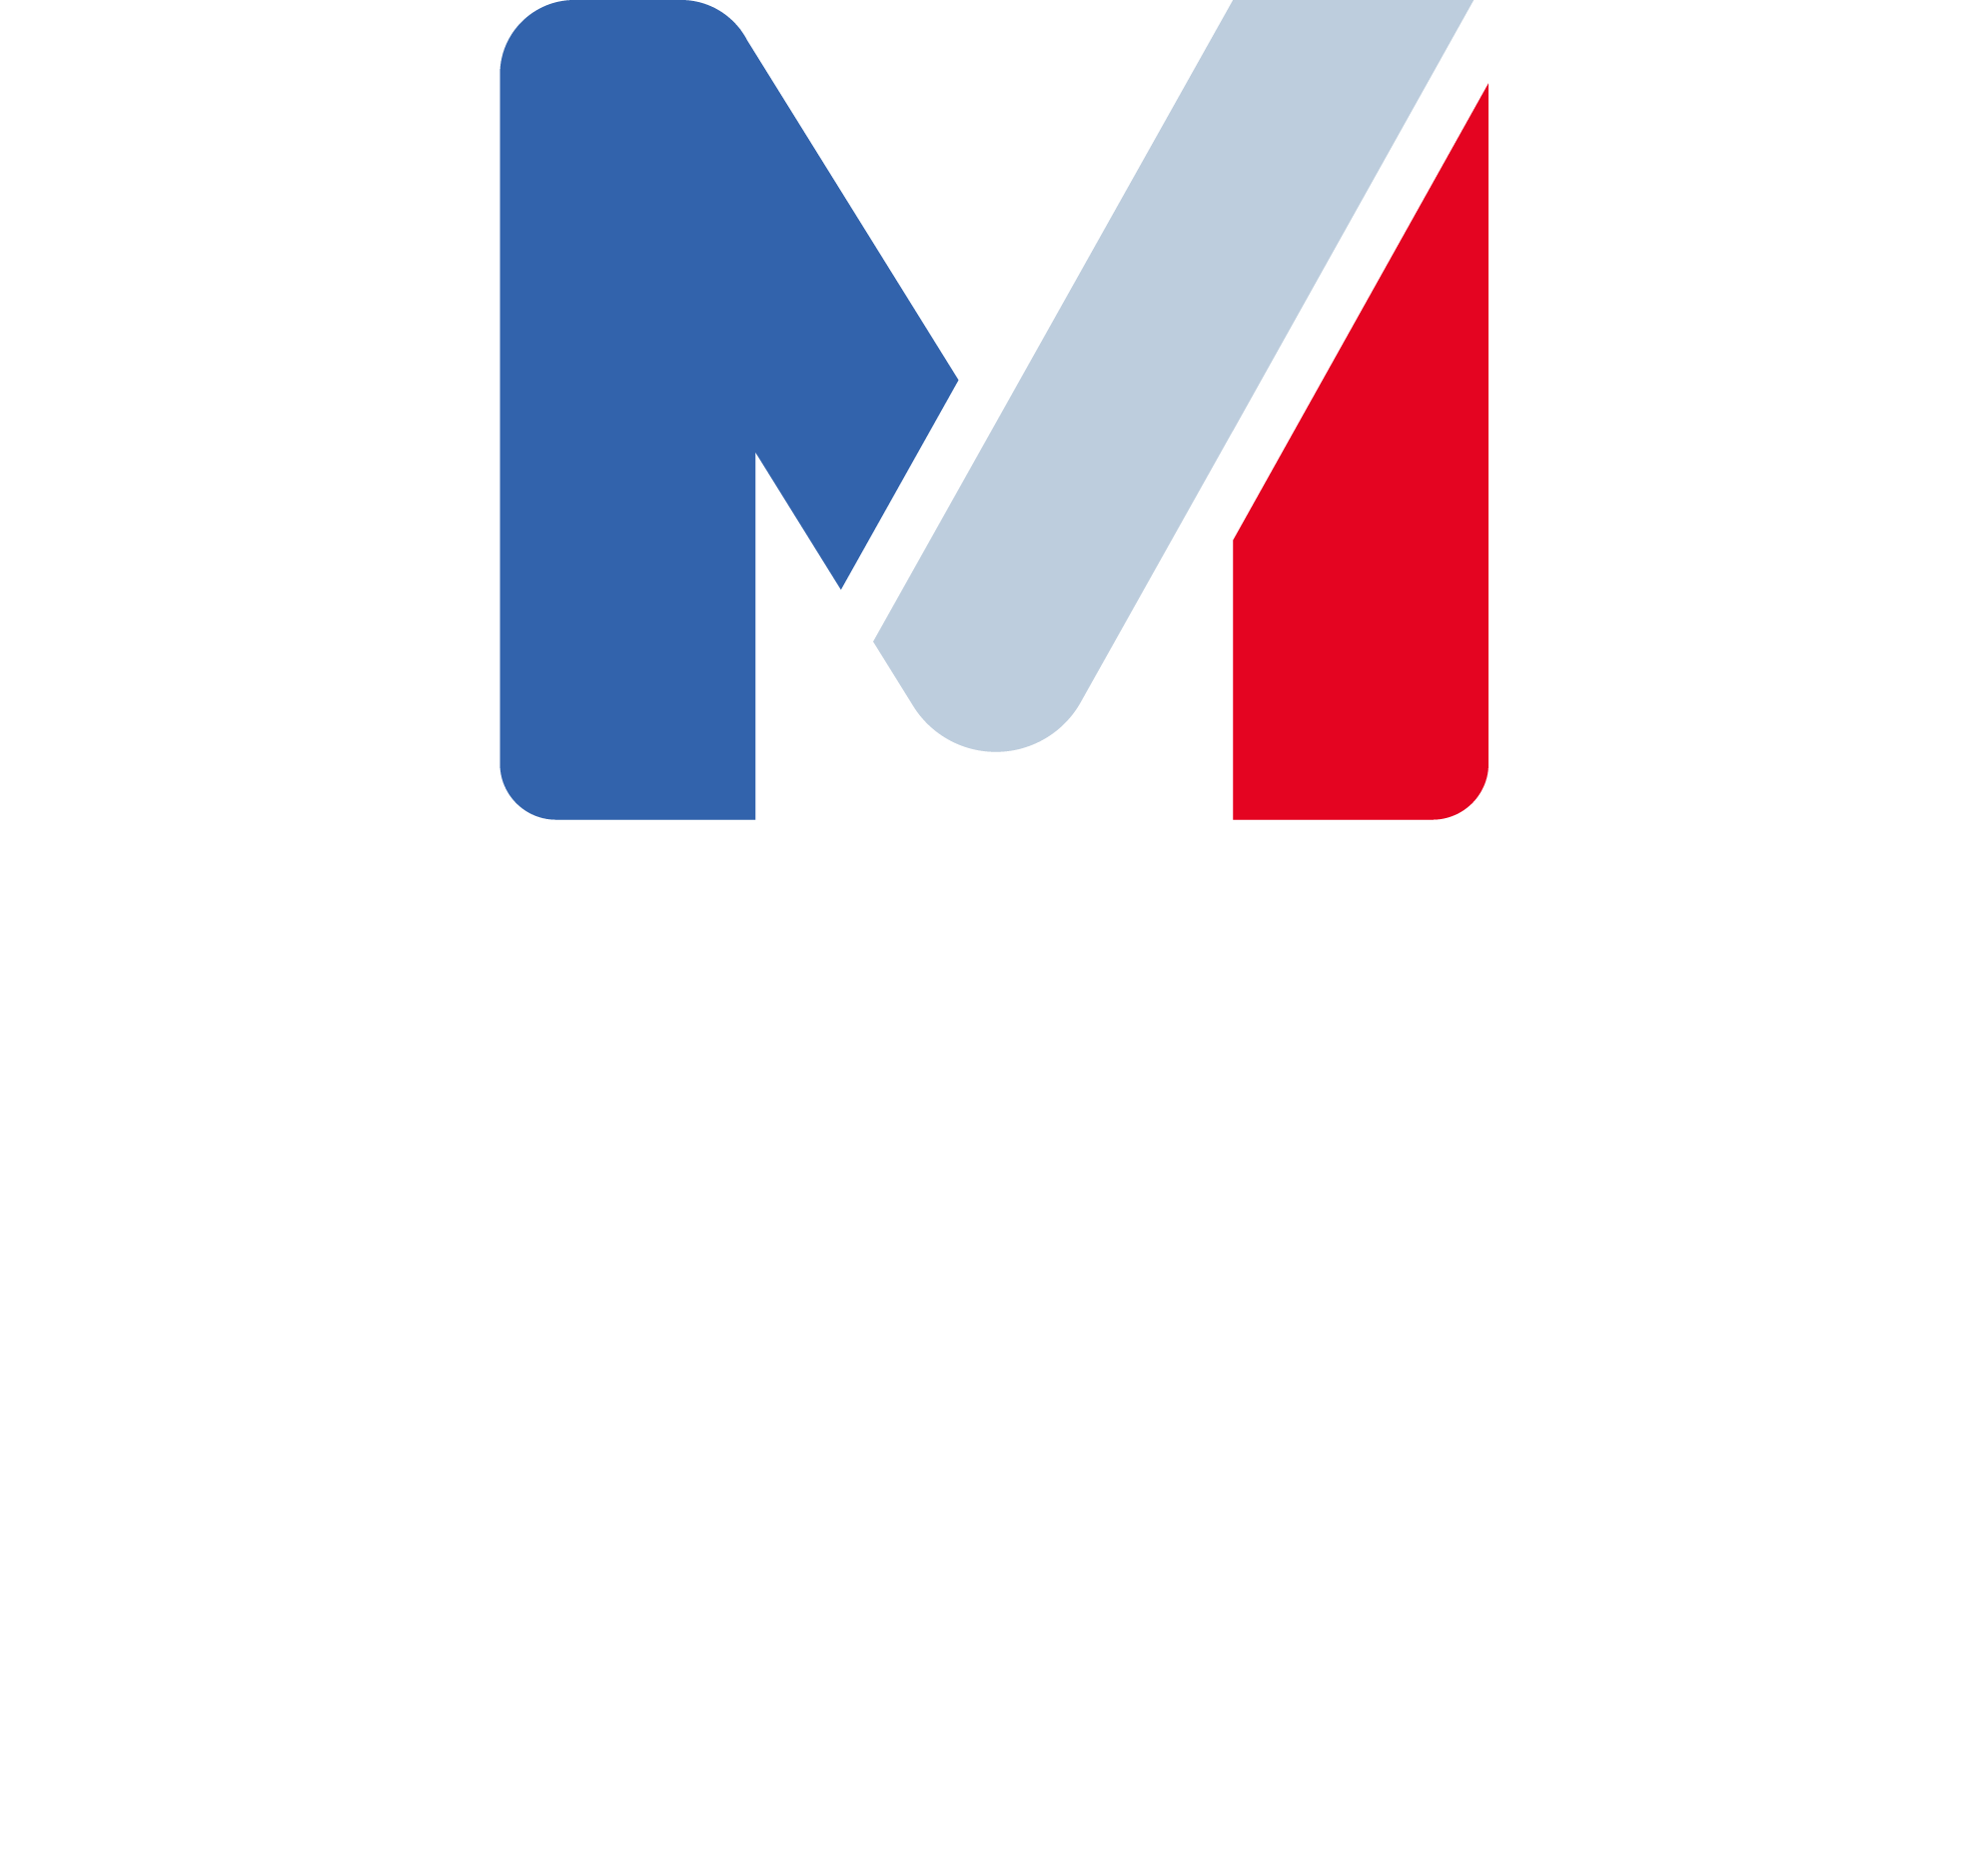 Marca logo